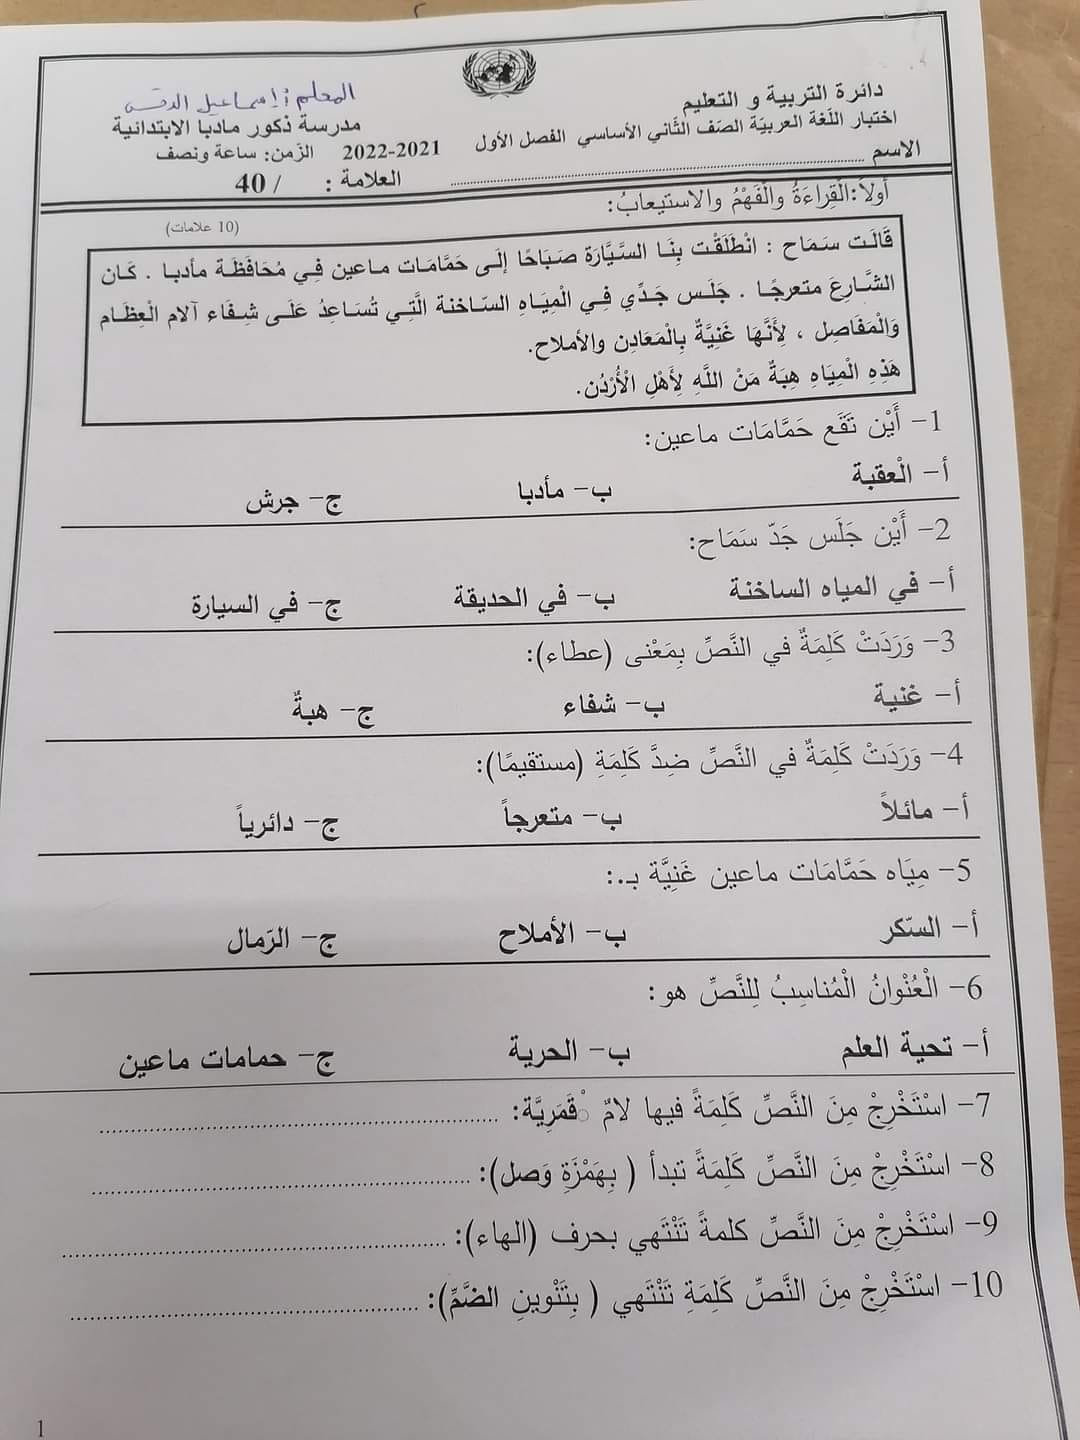 4 صور امتحان نهائي لمادة اللغة العربية للصف الثاني الفصل الاول 2021.jpg